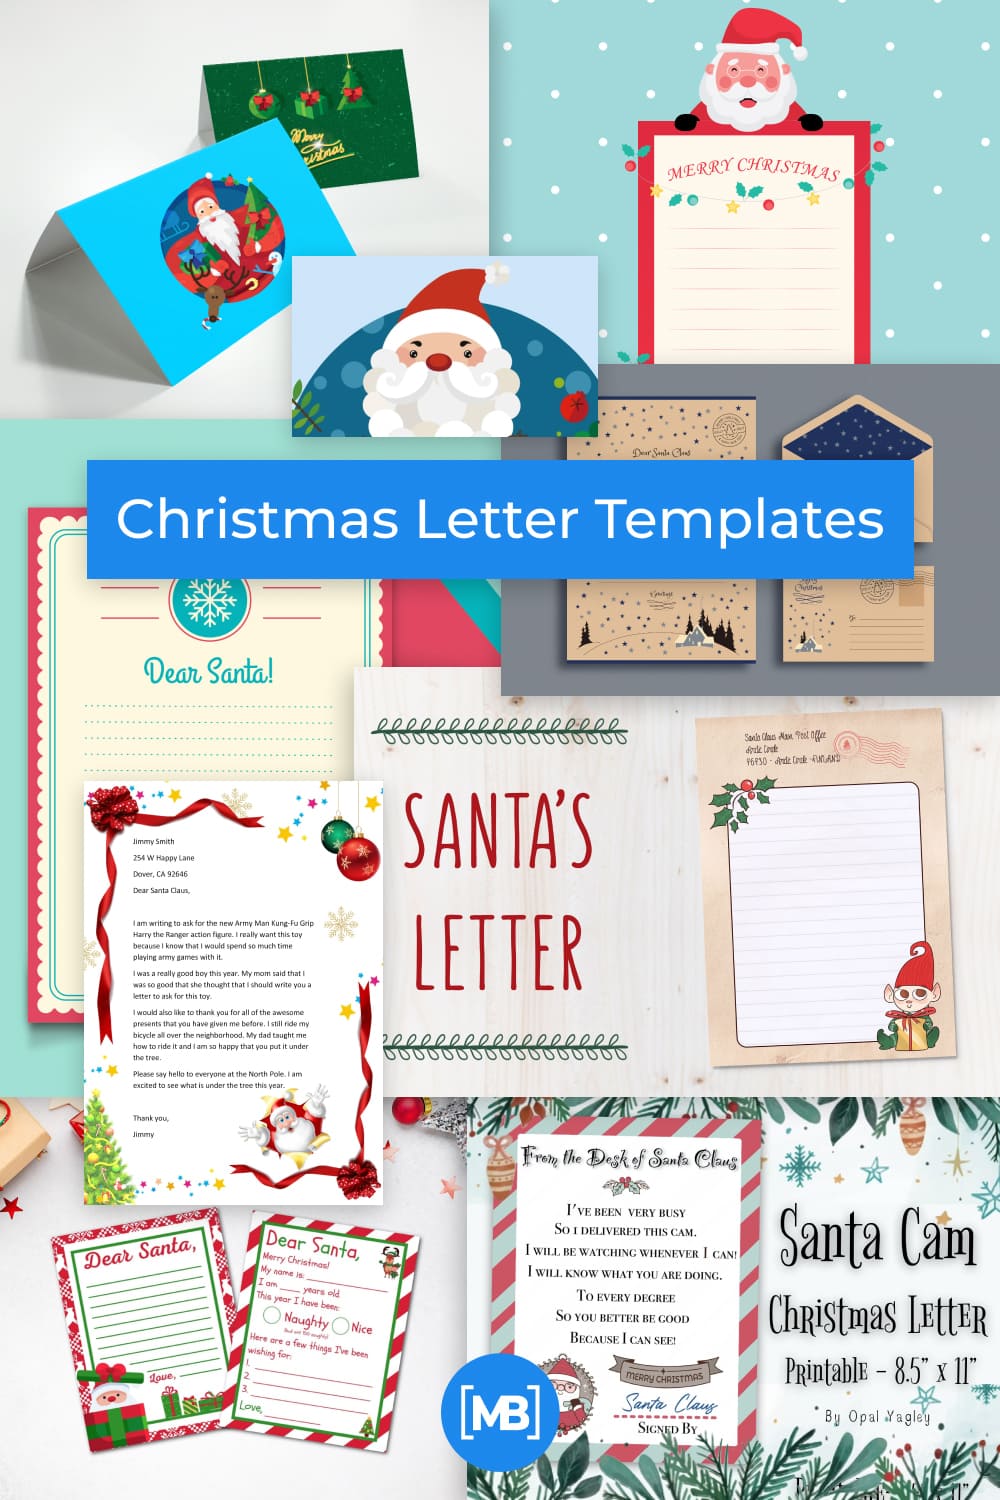 Christmas Letter Templates Pinterest.